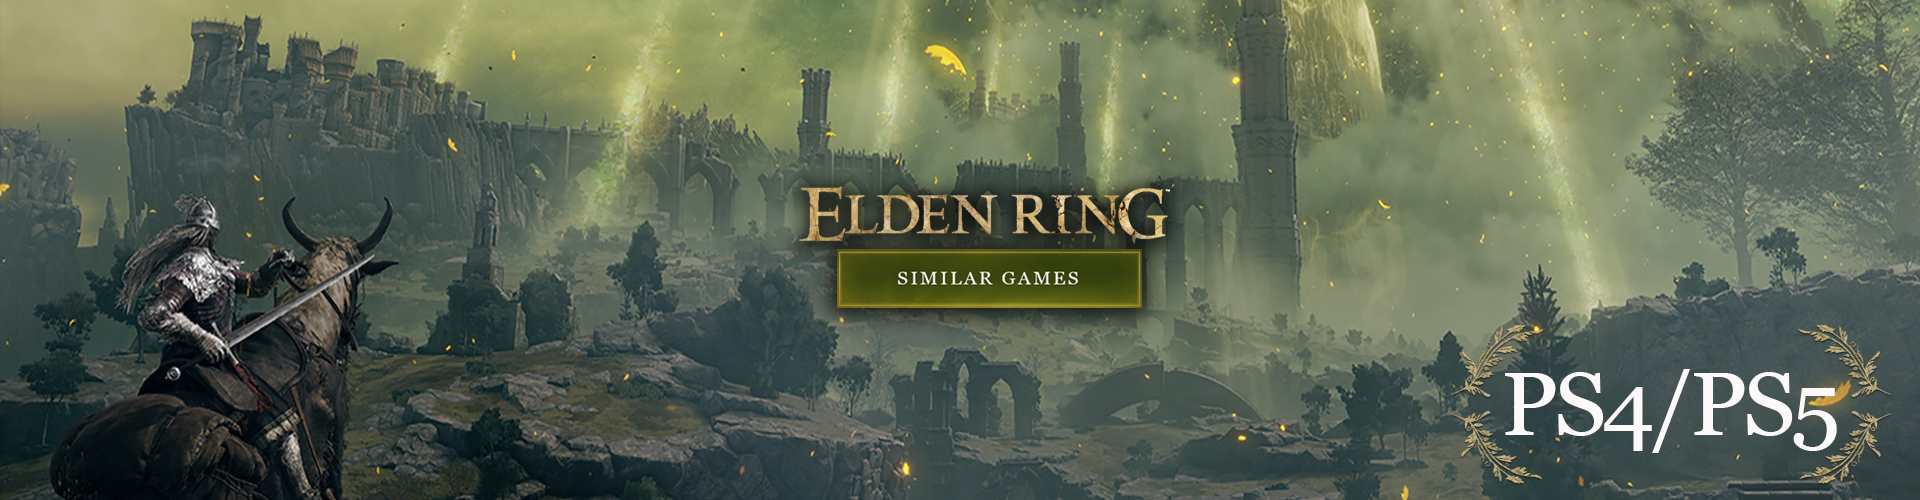 I Migliori Giochi come Elden Ring per PS4/PS5